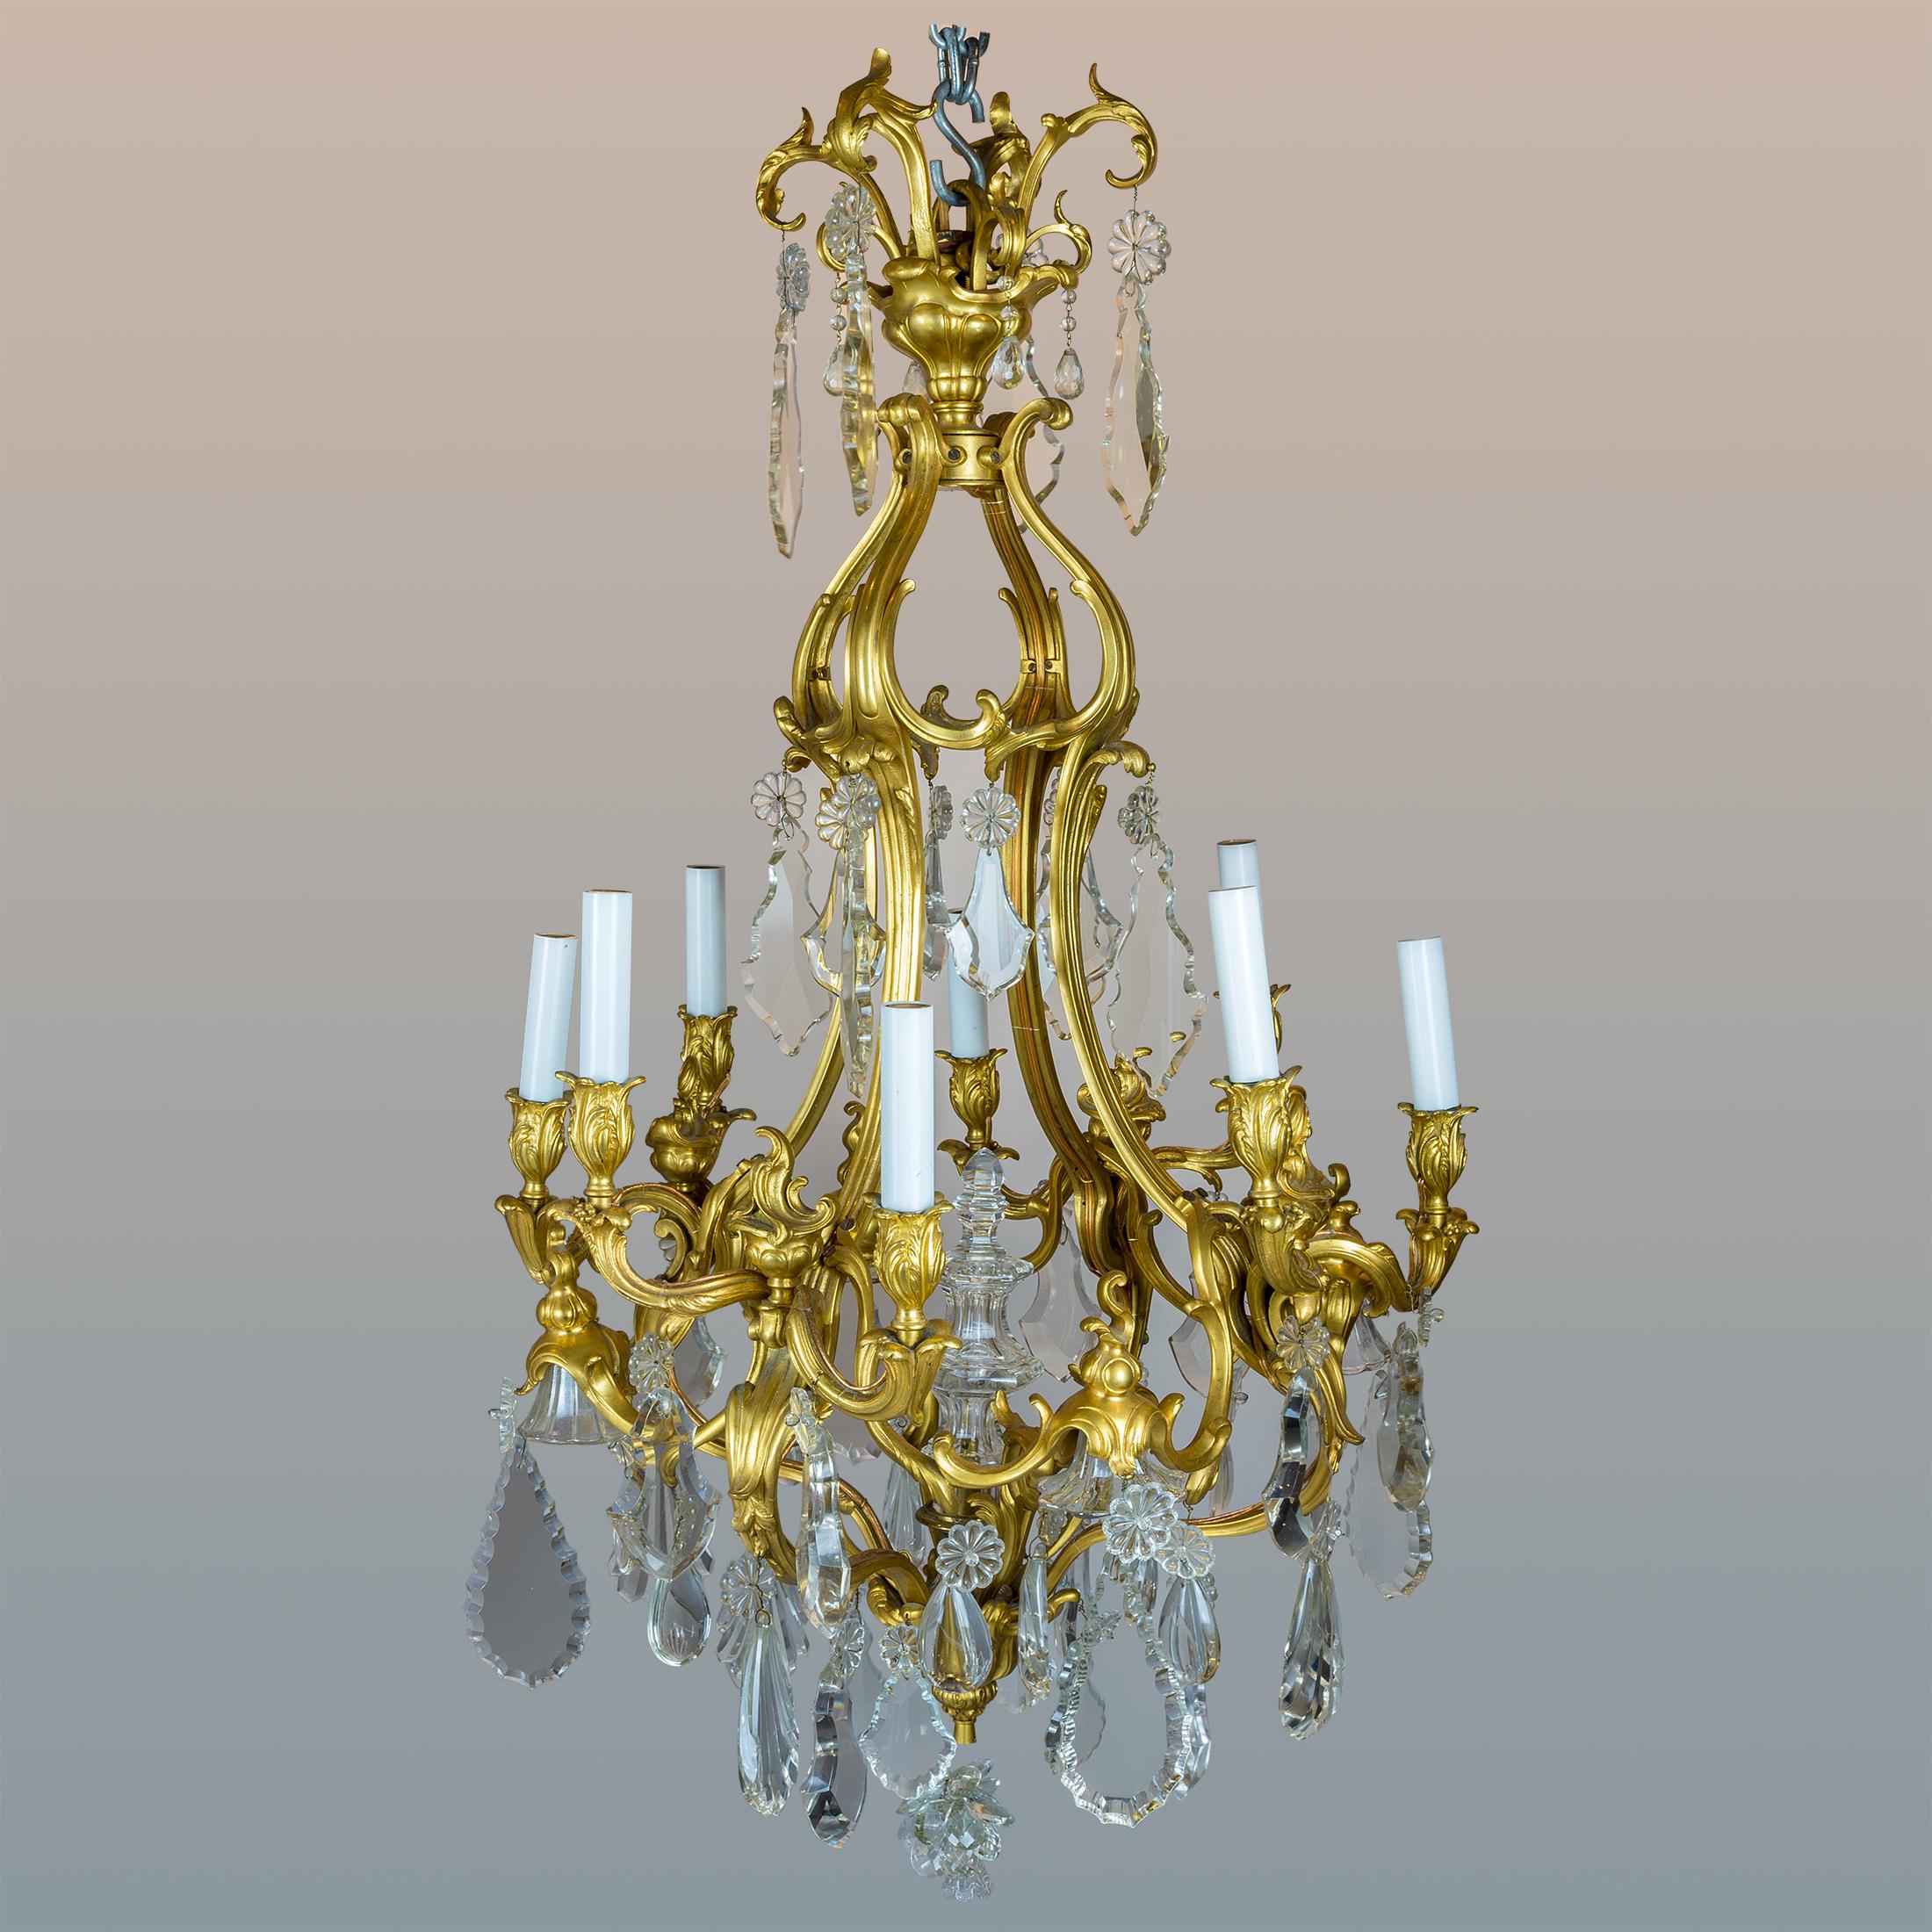 Un exquis lustre de style Louis XV à huit lumières en bronze doré et cristal taillé

Date : 19ème siècle
Origine : Français
Dimension : 45 pouces x 22 pouces.